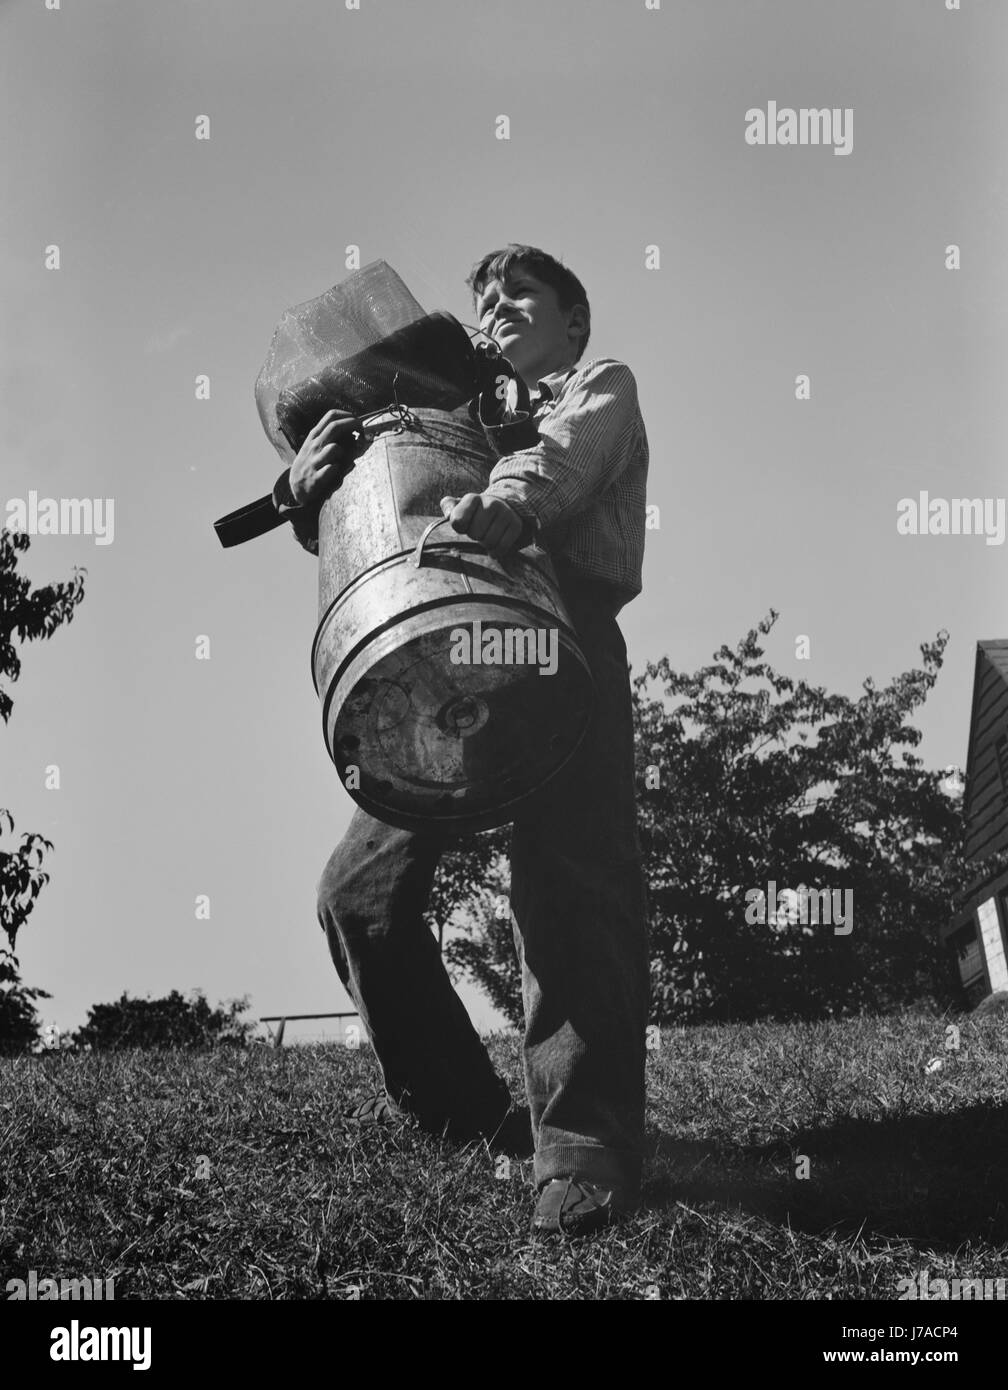 Ein kleiner Junge sammelt Schrott für Amerikas Kriegsindustrien, 1942. Stockfoto